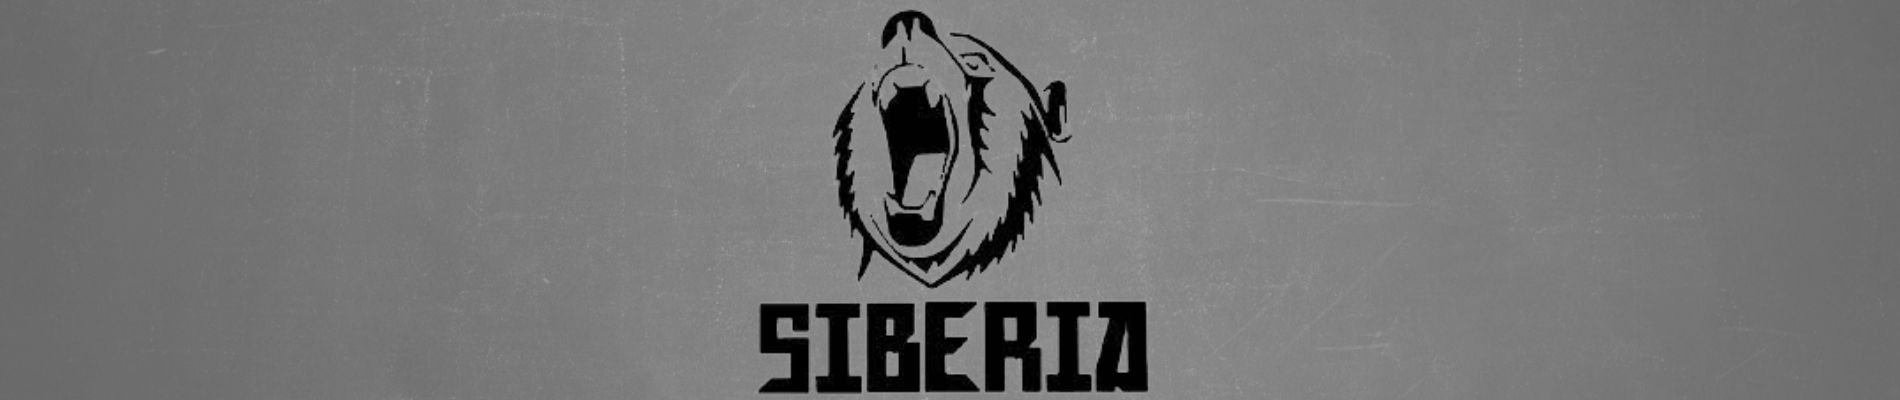 siberia snus logo